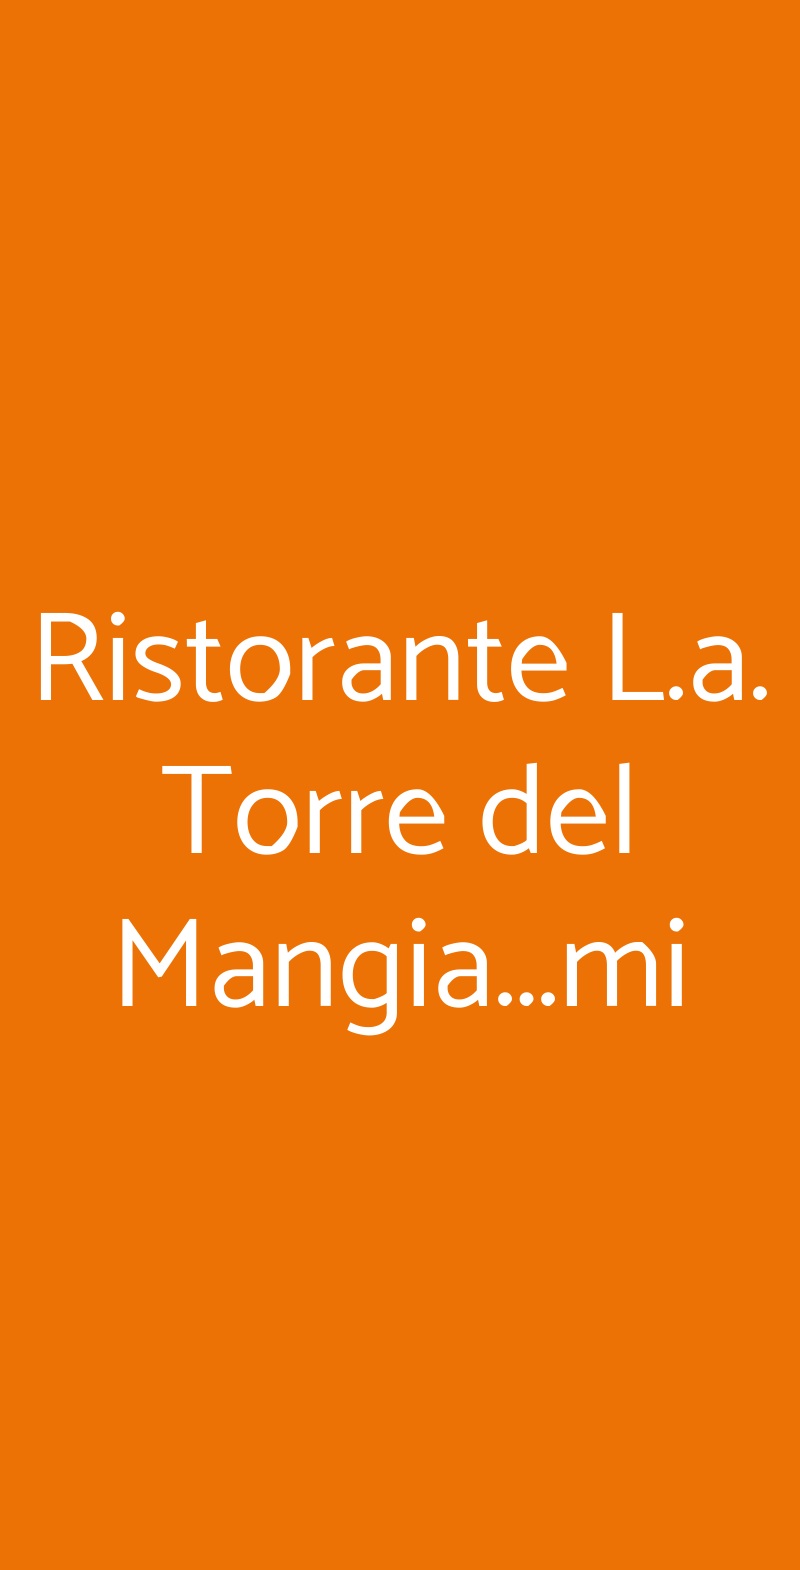 Ristorante L.a. Torre del Mangia...mi Milano menù 1 pagina